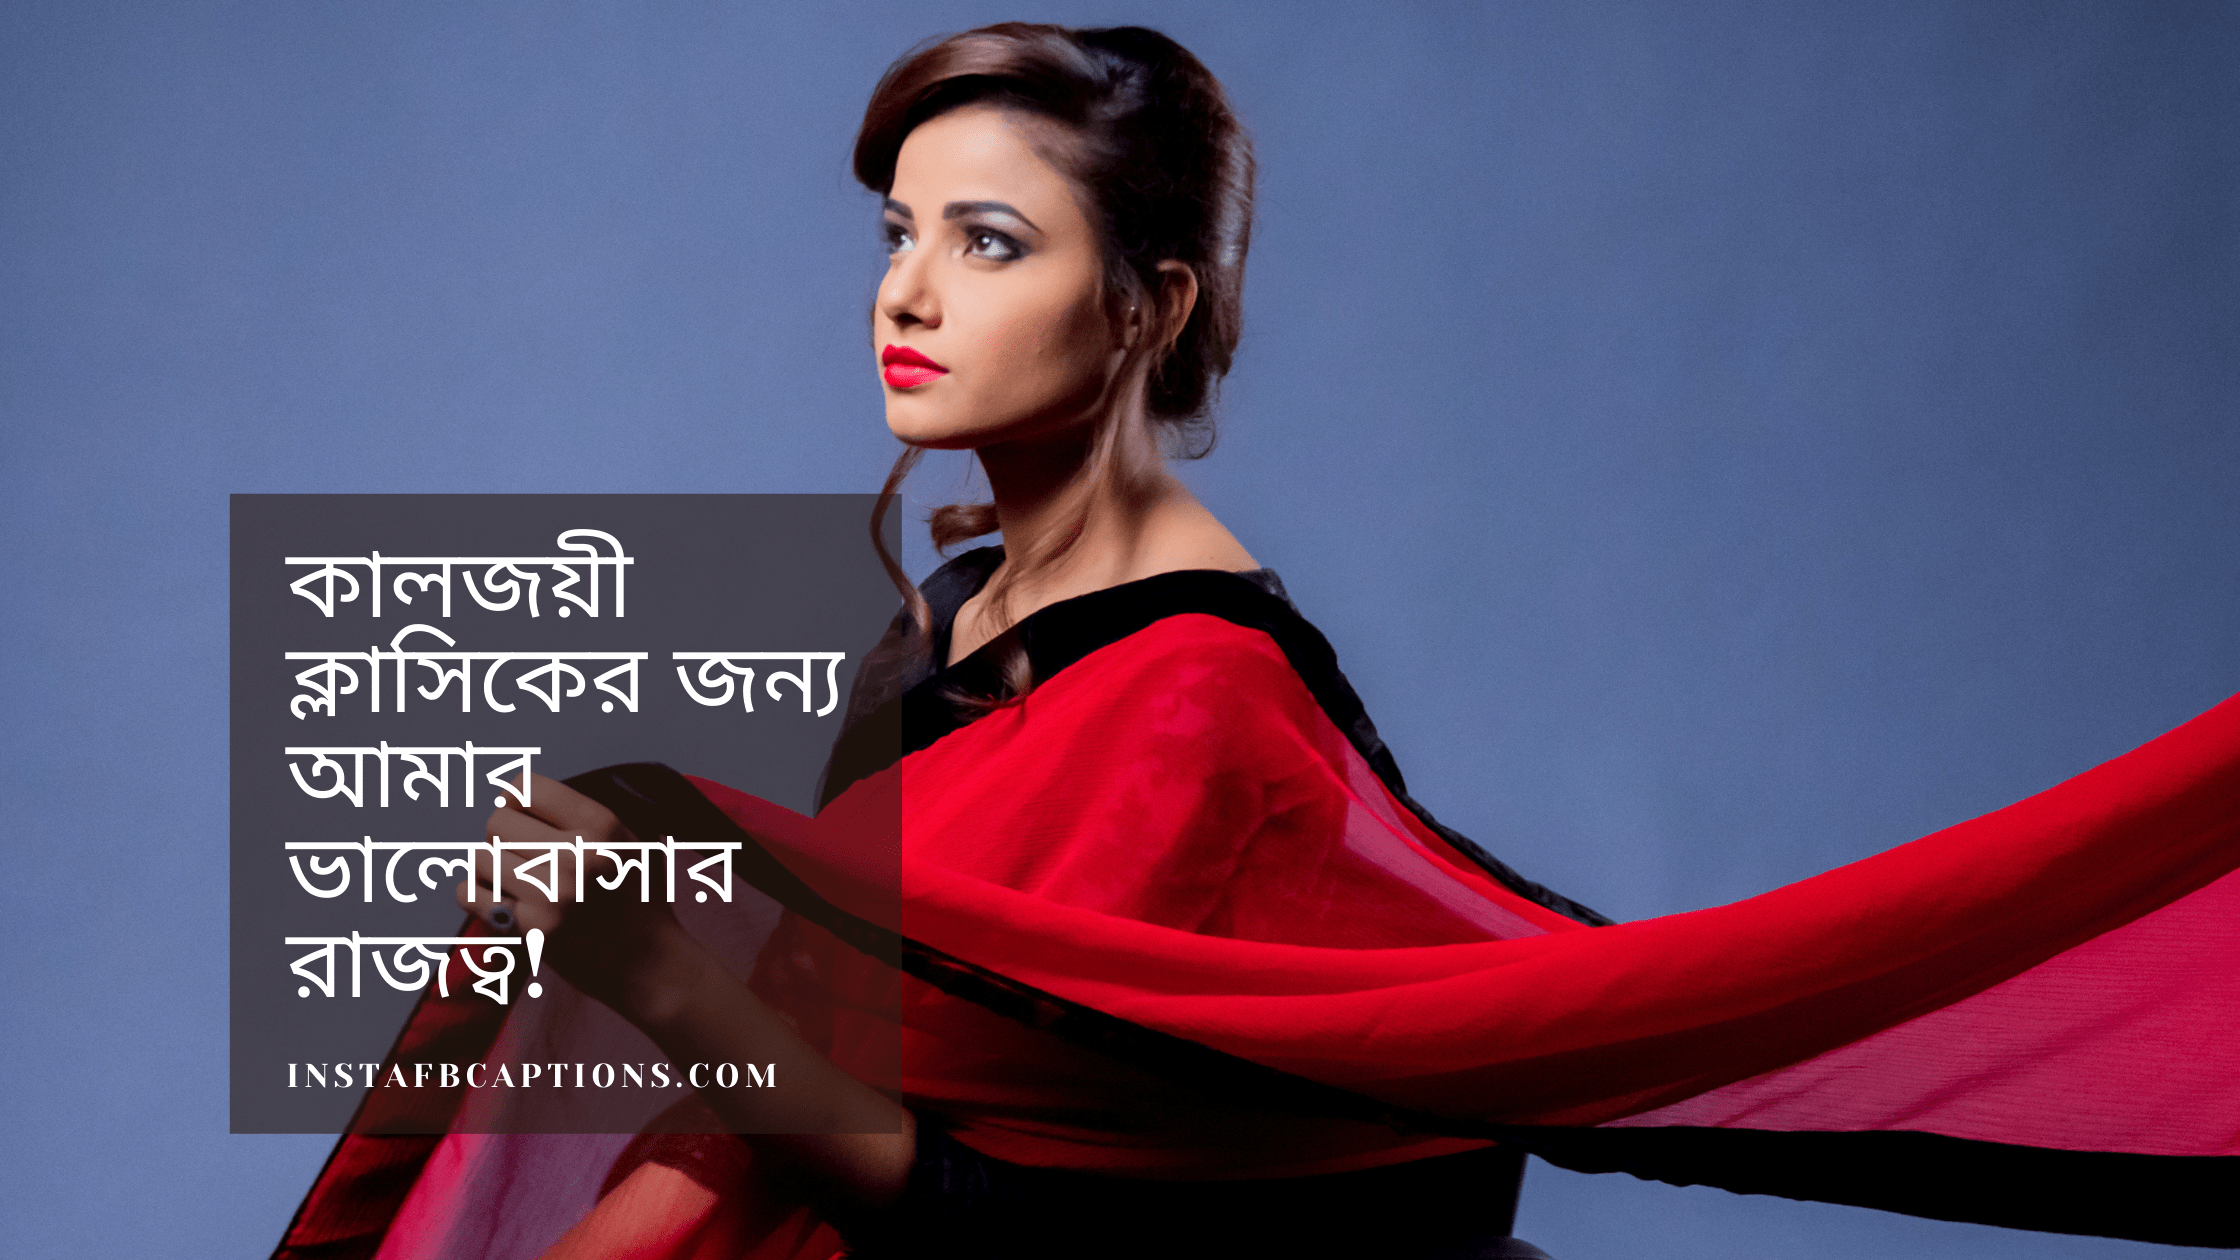 Saree Captions In Bengali  - Saree Captions in Bengali - 190+ Instagram Captions in BENGALI in 2022